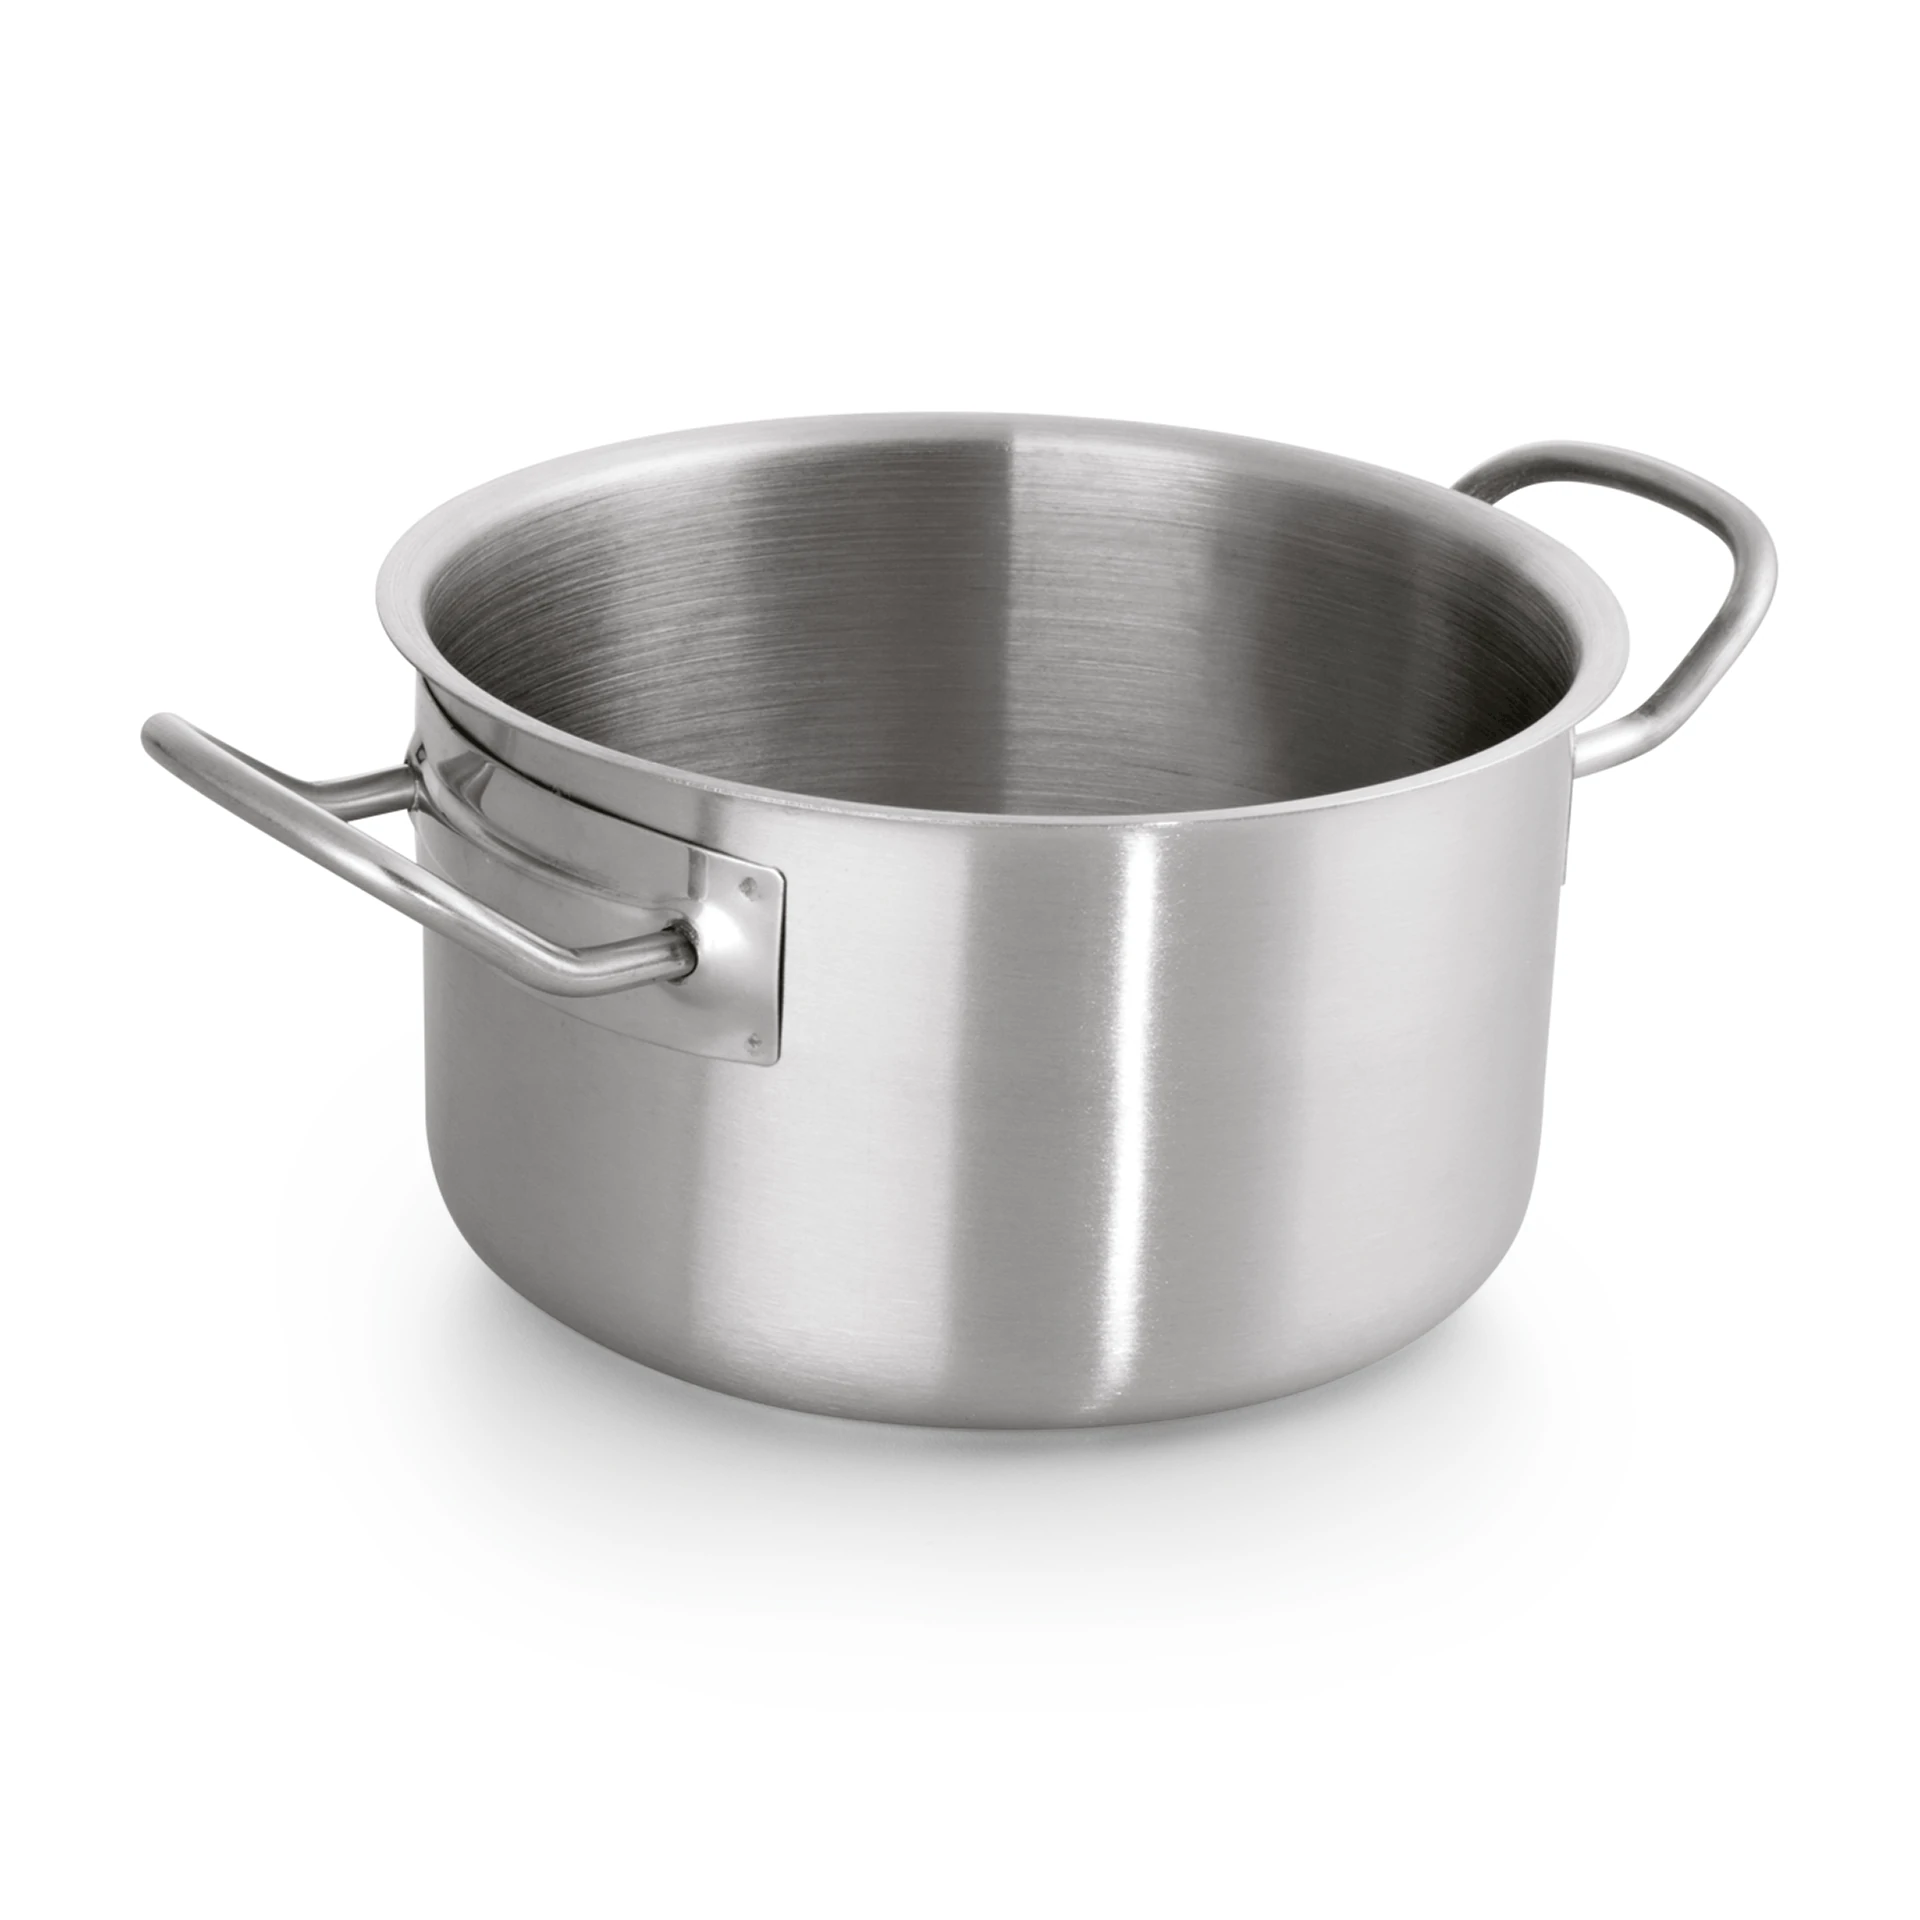 Stewing pan